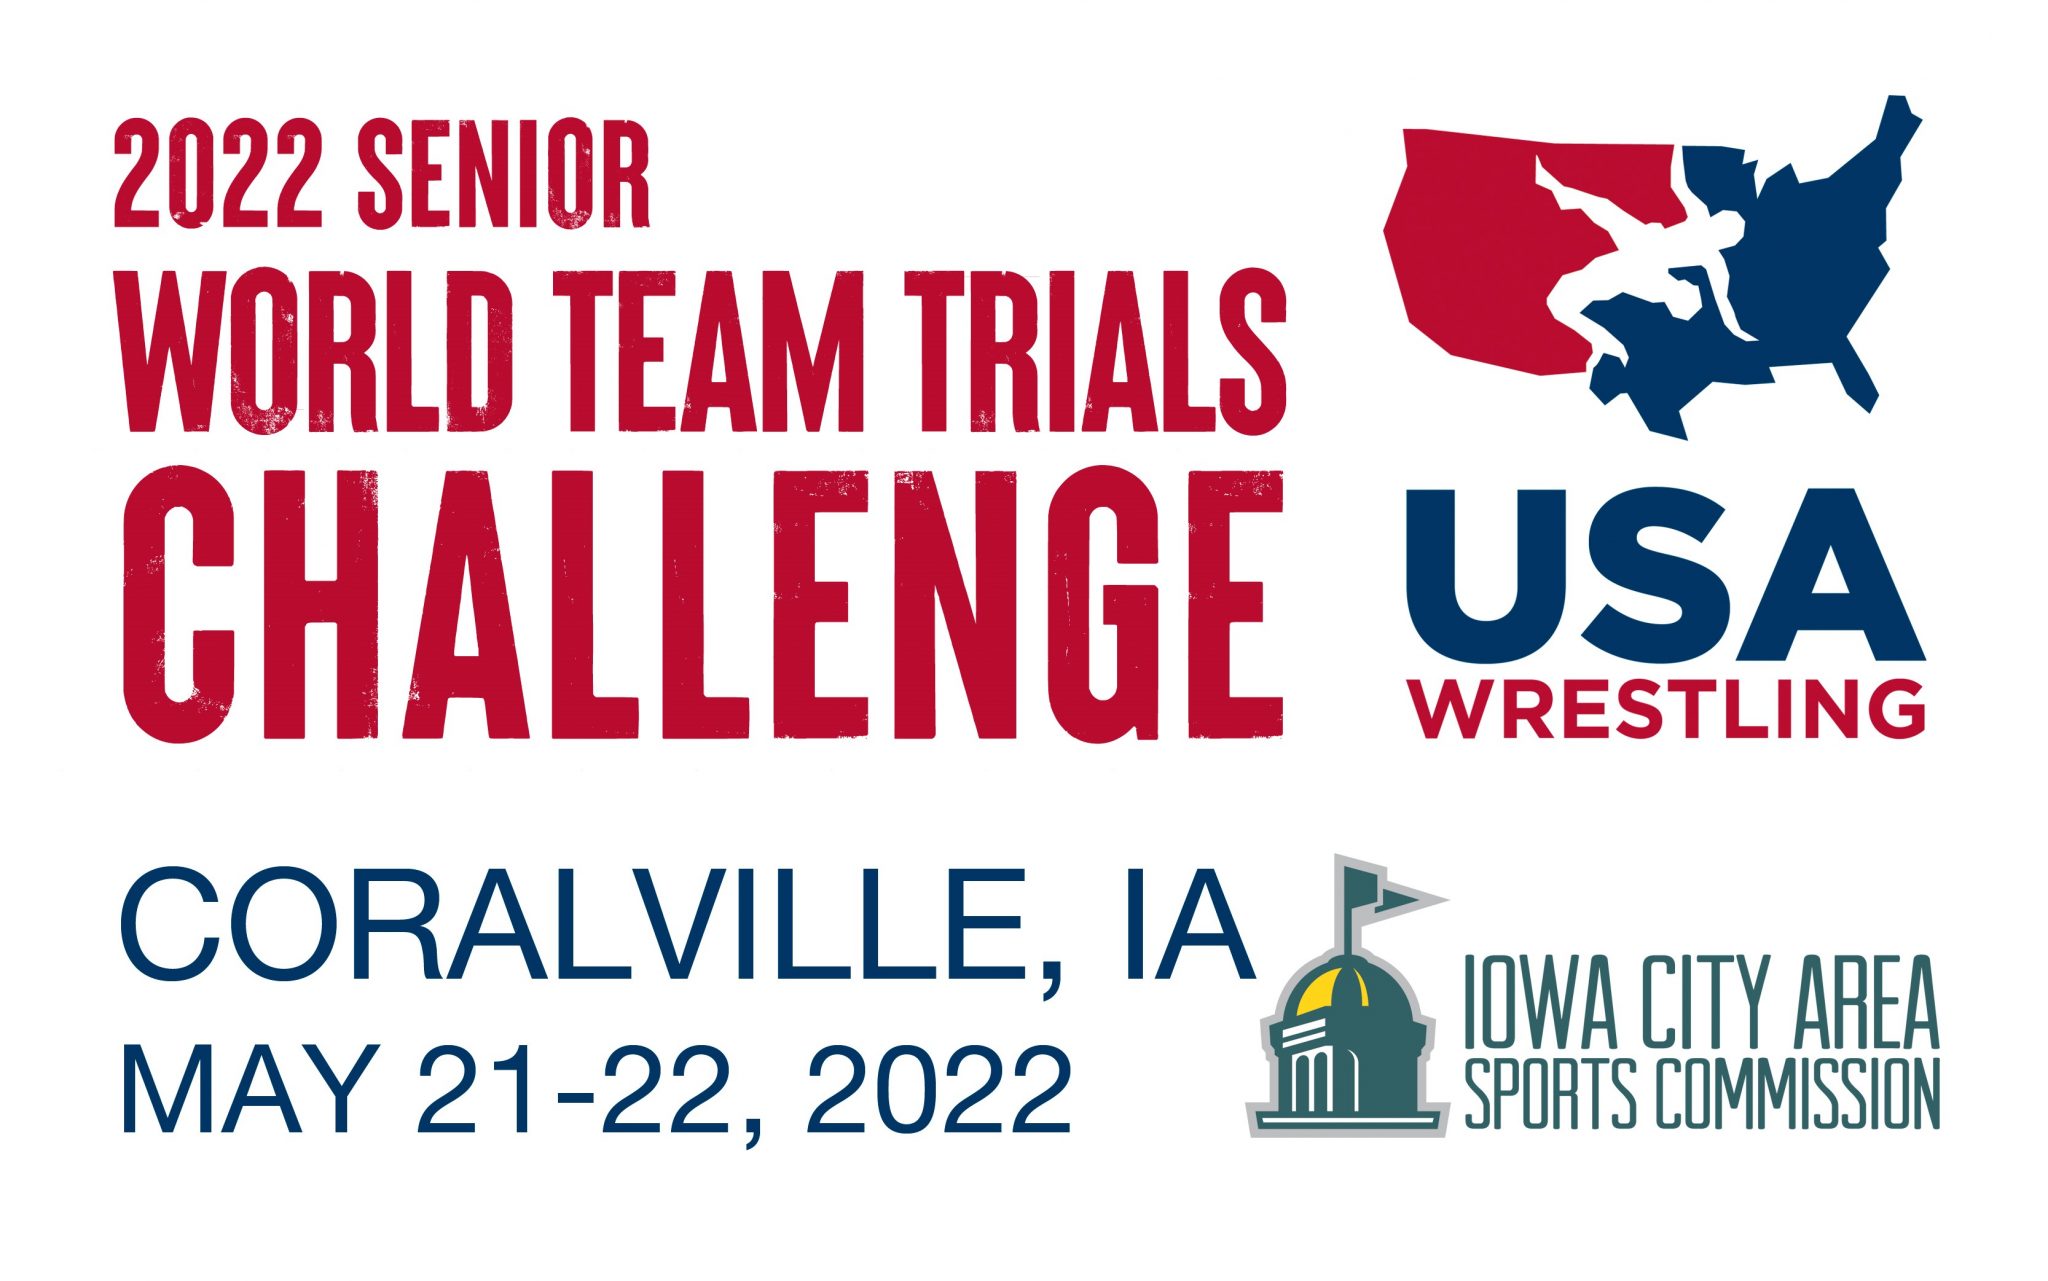 2022 World Team Trials Challenge Tournament Think Iowa City